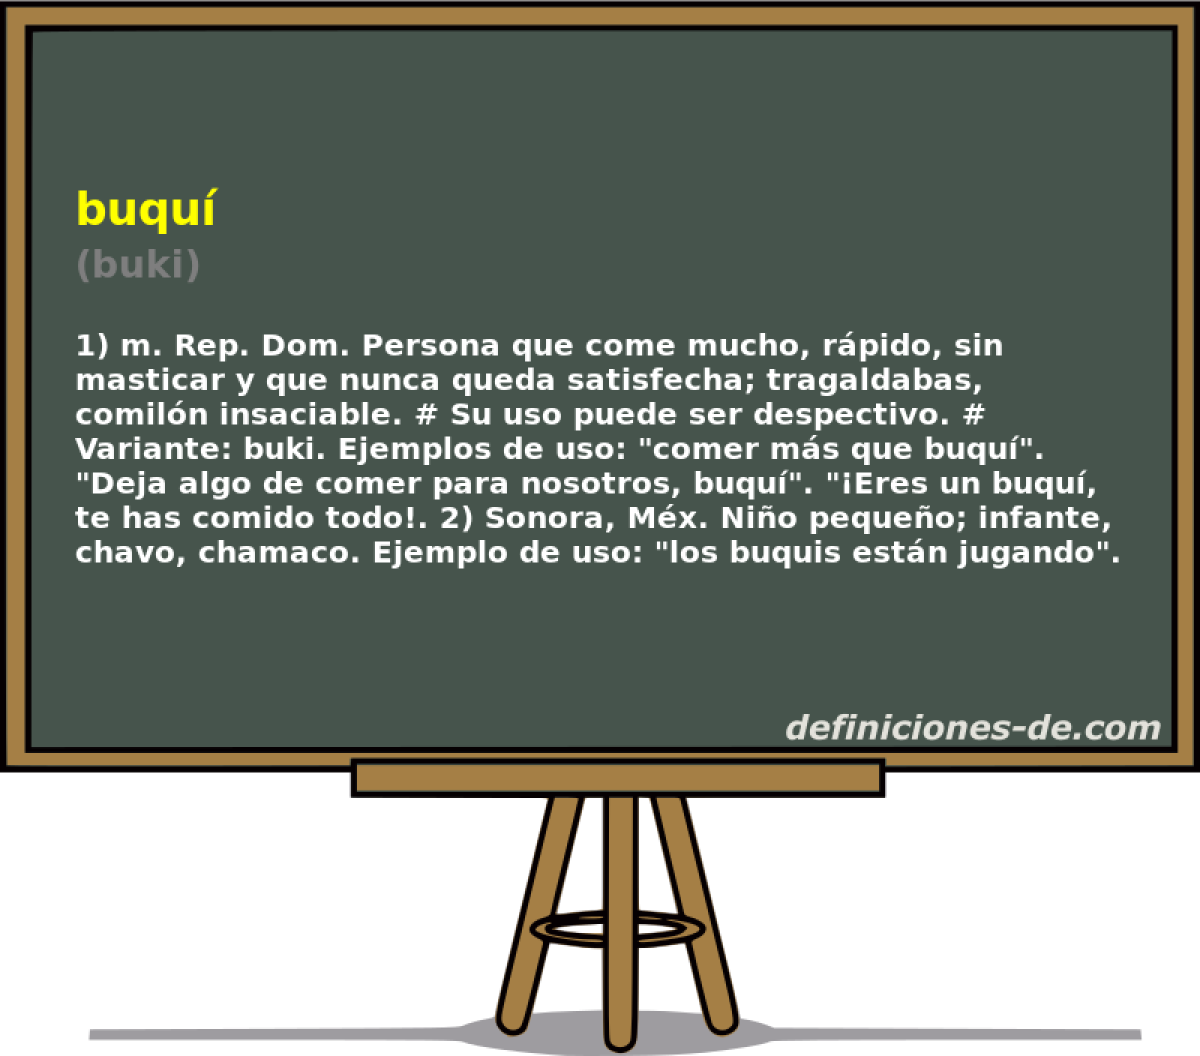 buqu (buki)